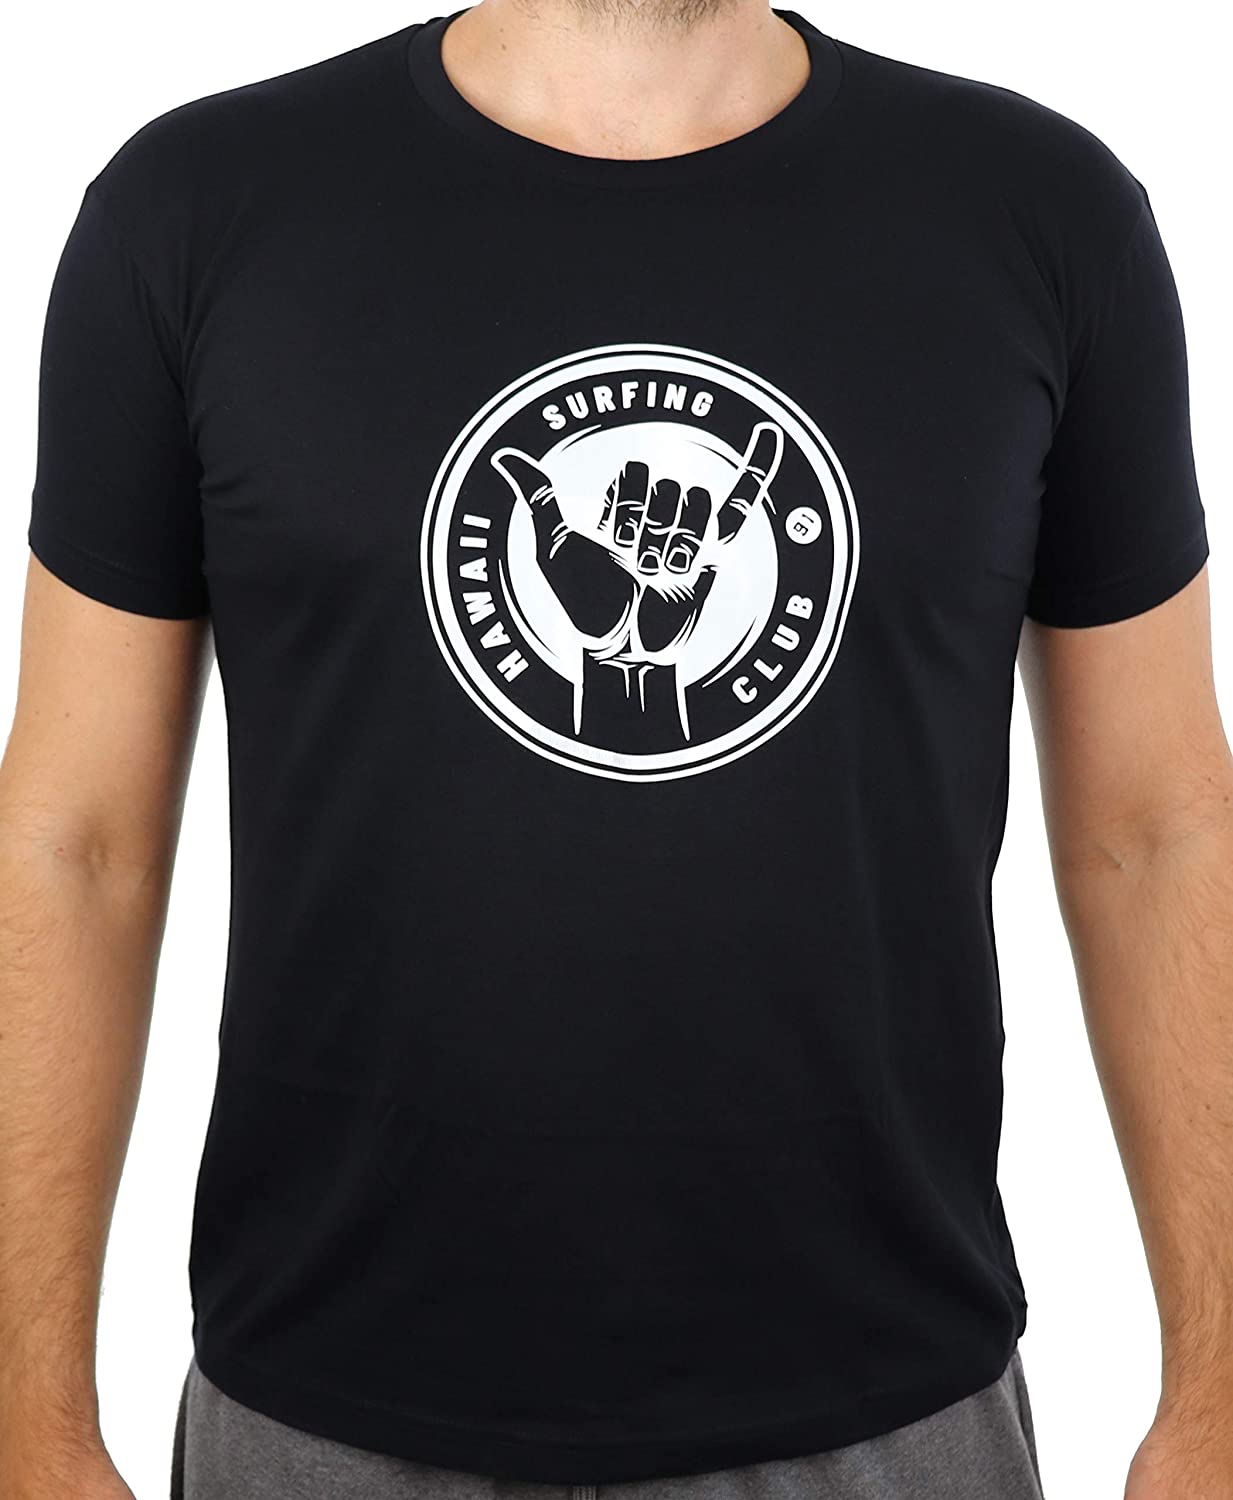 Surf-T-Shirt, Schwarzes T-Shirt mit weissem Aufdruck, Surfgrafik, Surfer